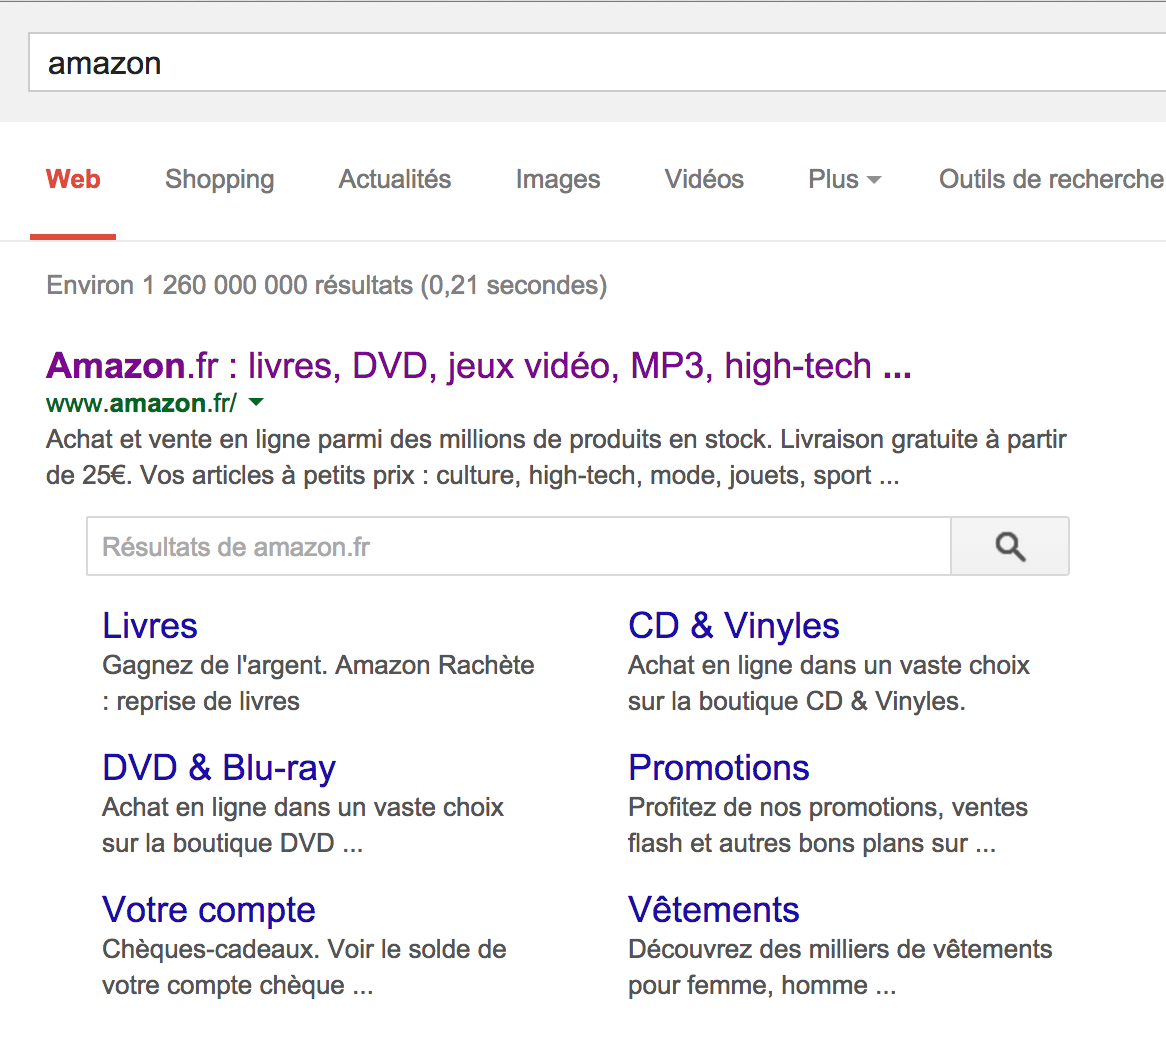 Résultat de recherche Amazon sur google.fr